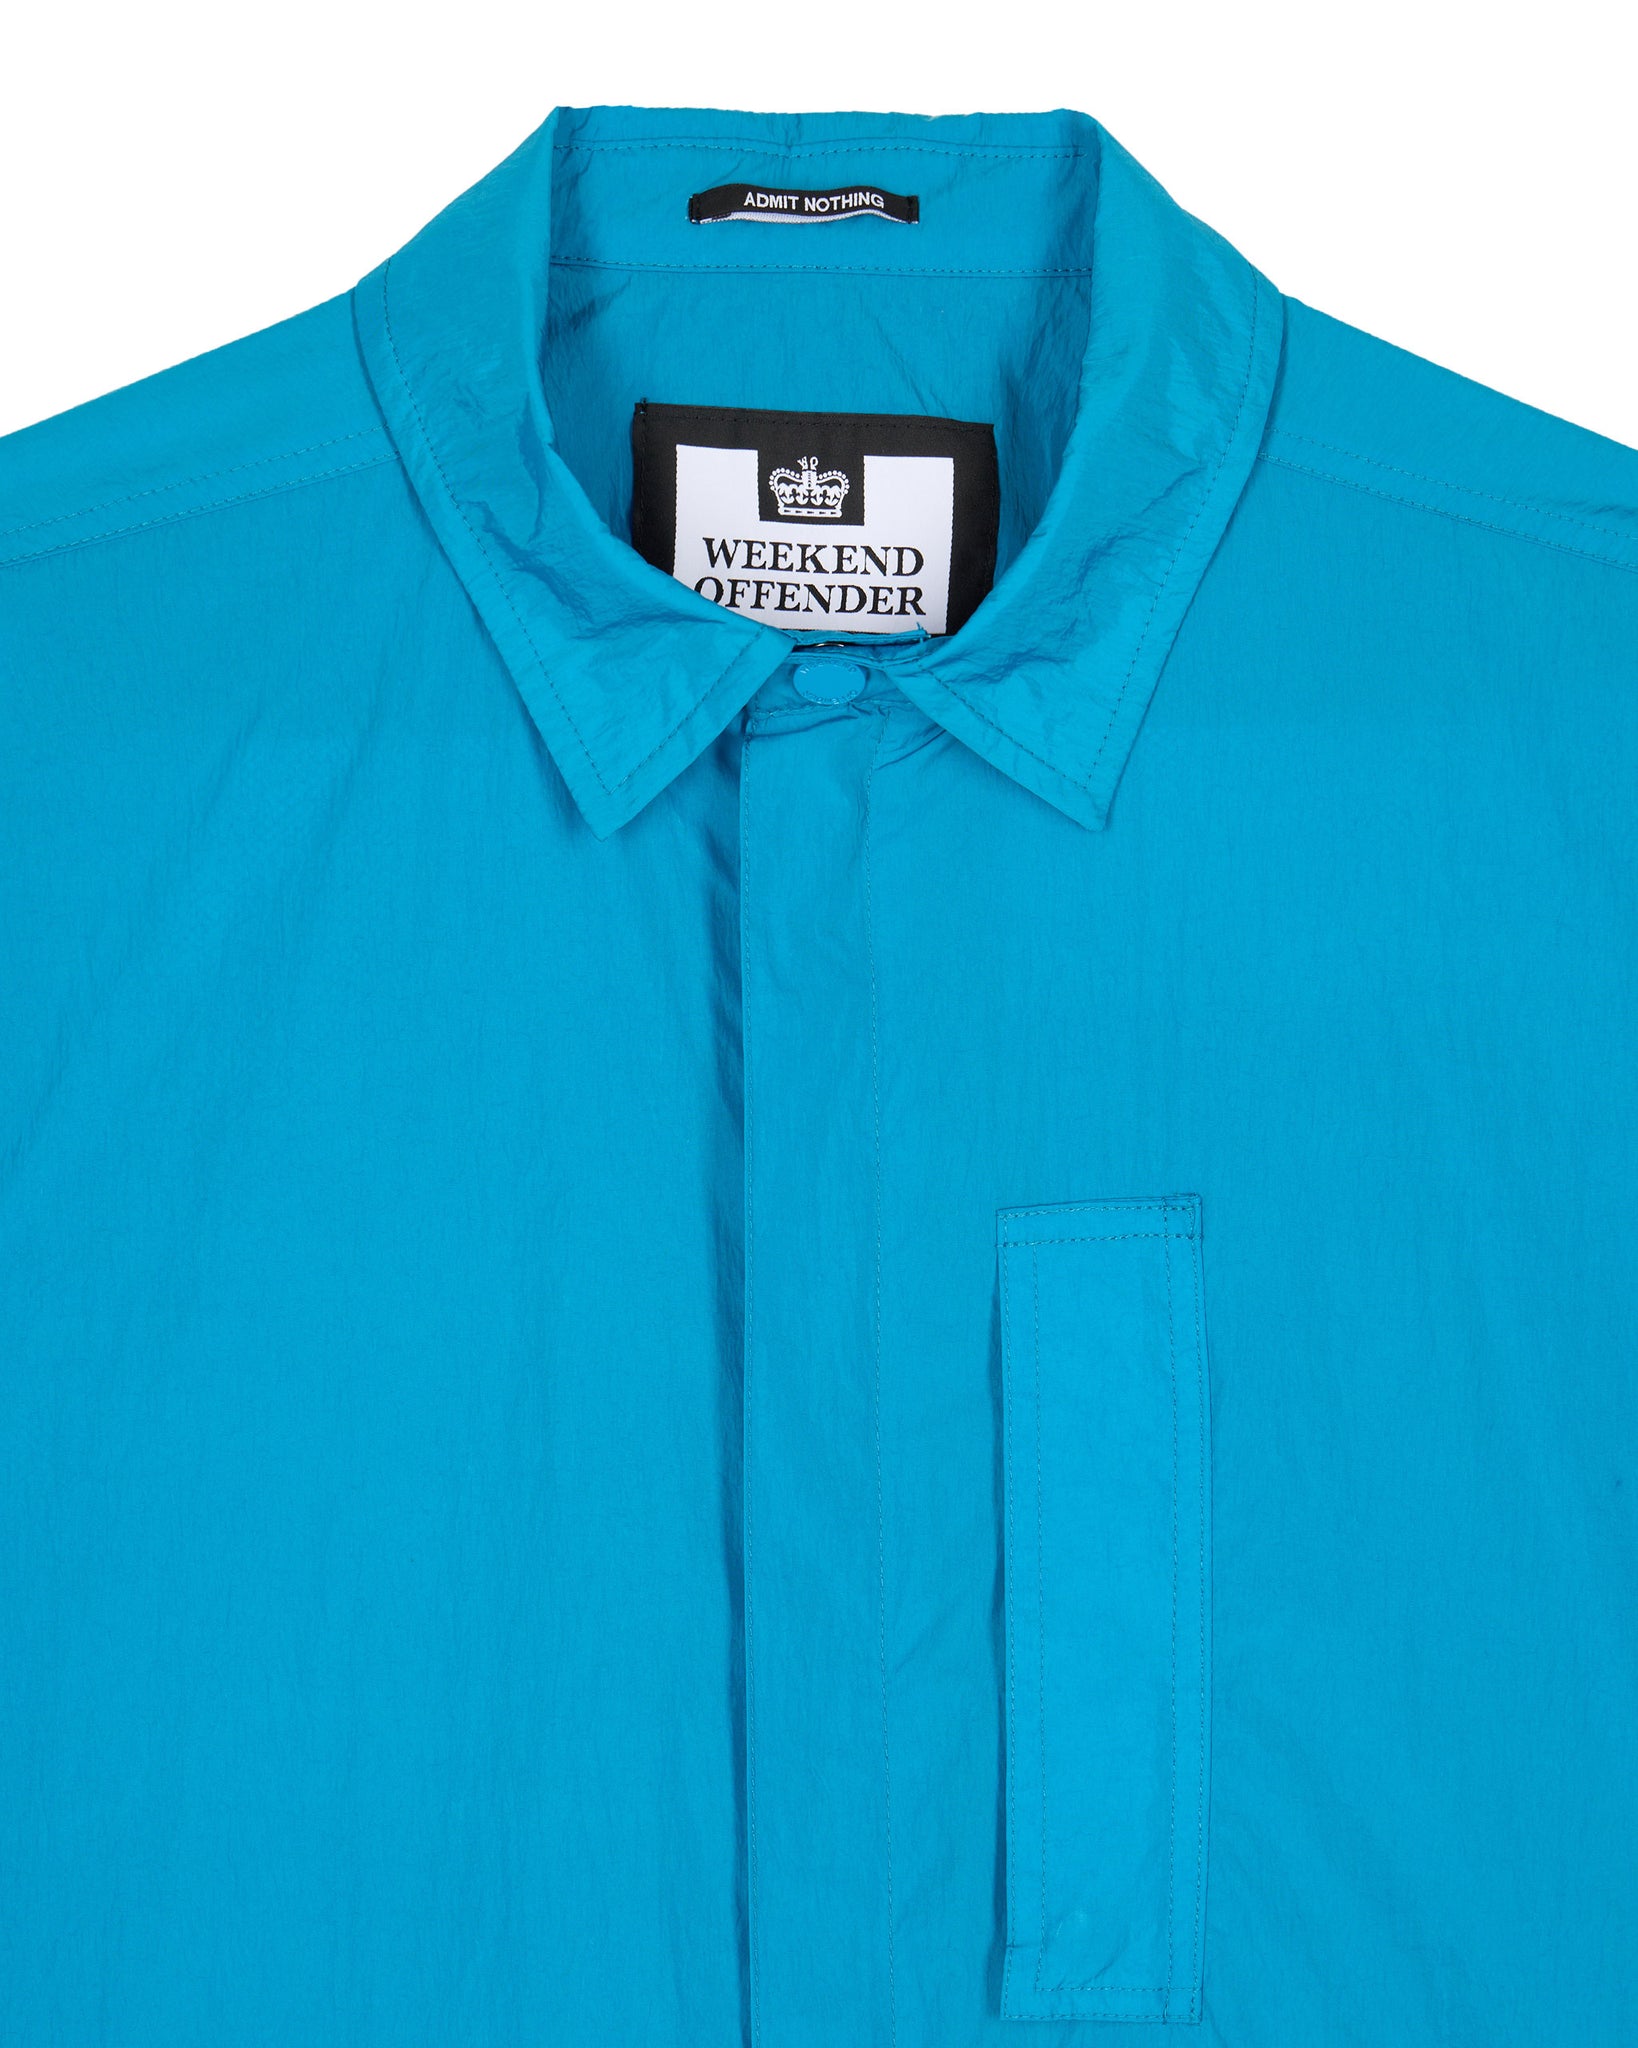 Porter Pocket Over-Shirt Azure Blue